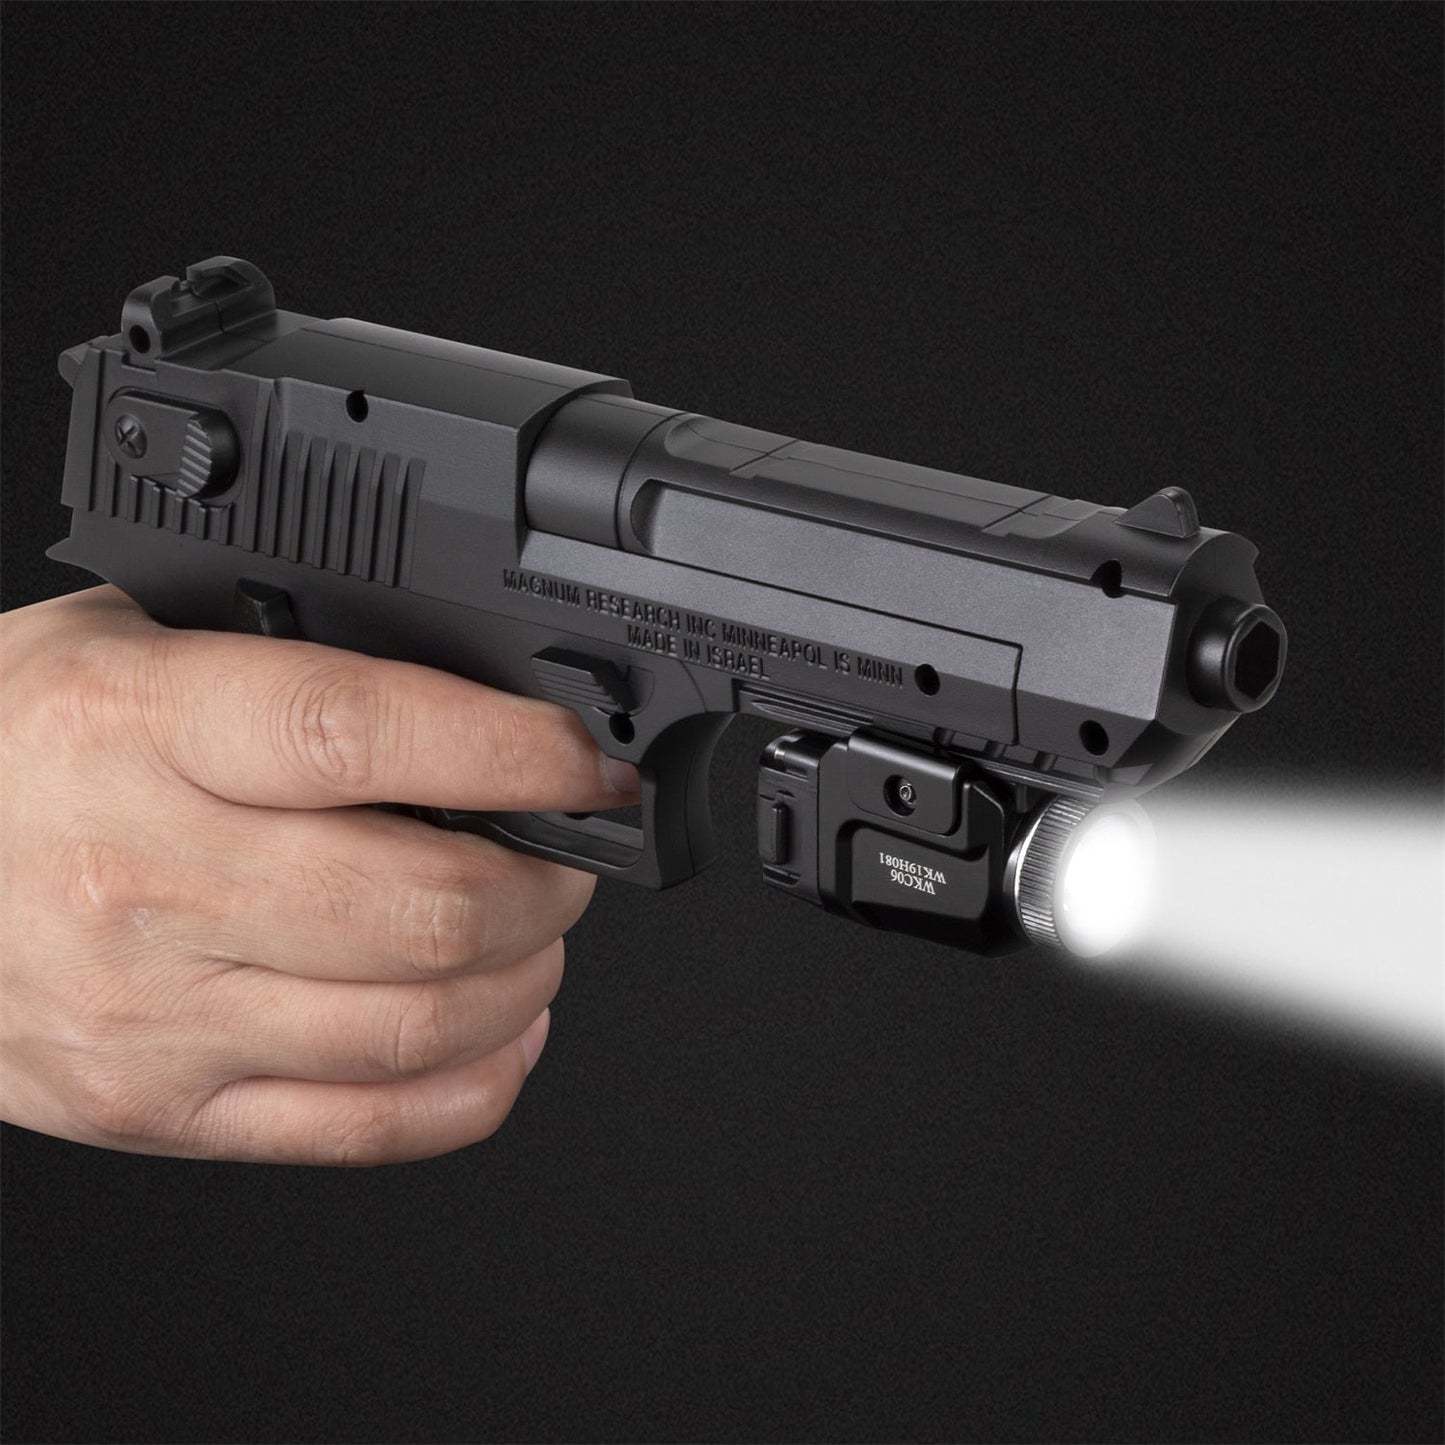 Mini lampe de poche pistolet WKC06 Cree XPL batterie CR123A 500 Lm - ACTION AIRSOFT